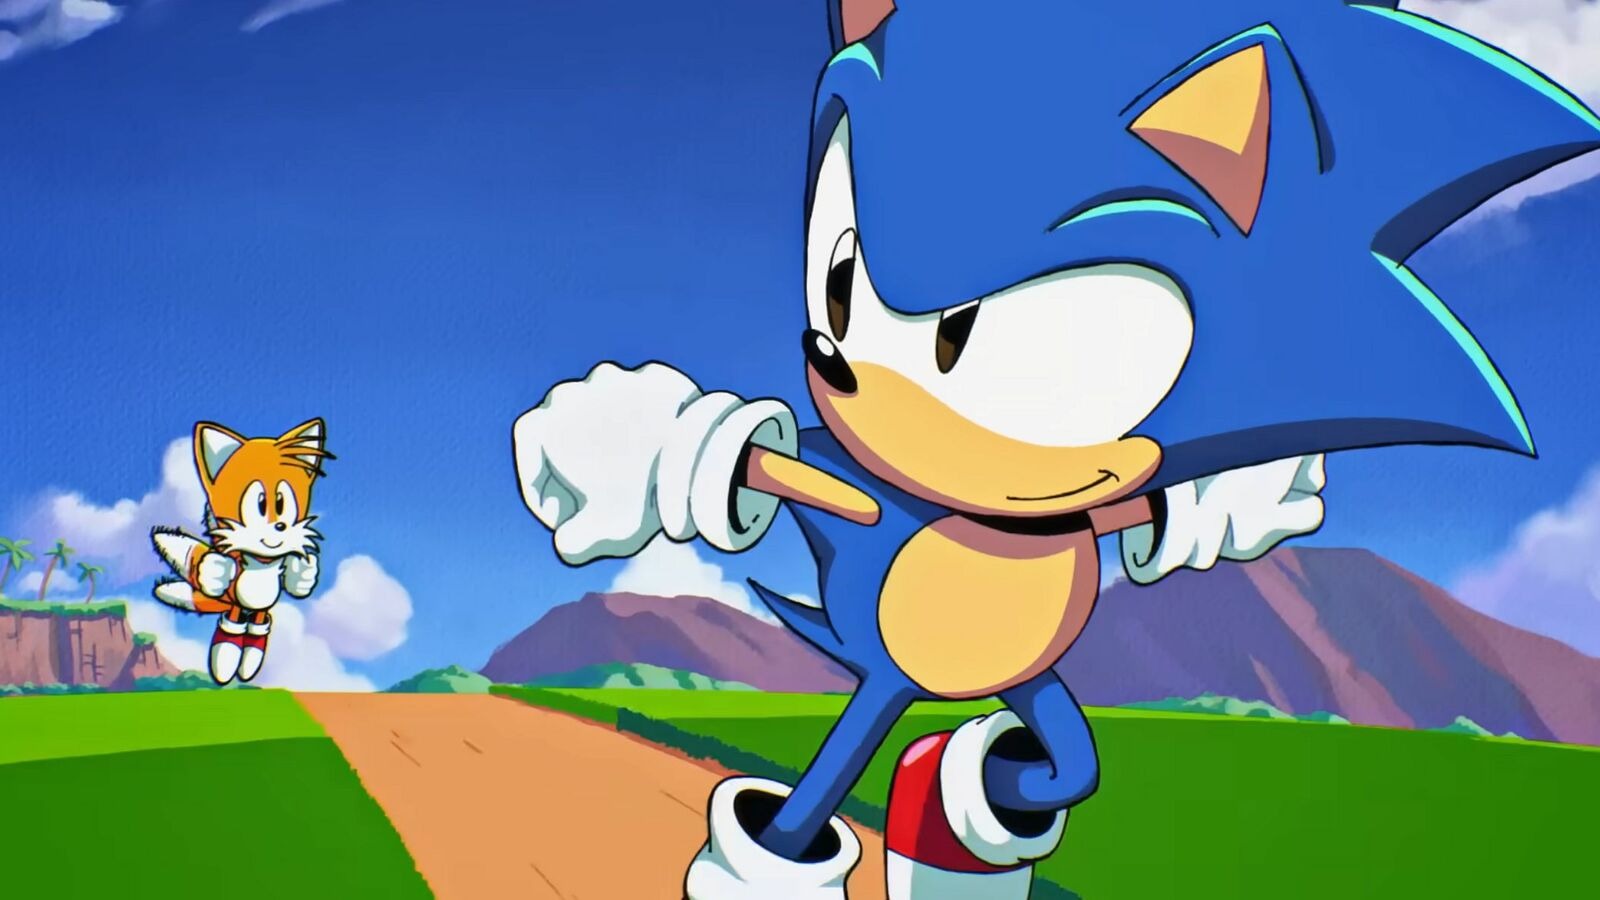 Imagem de Sonic Origins